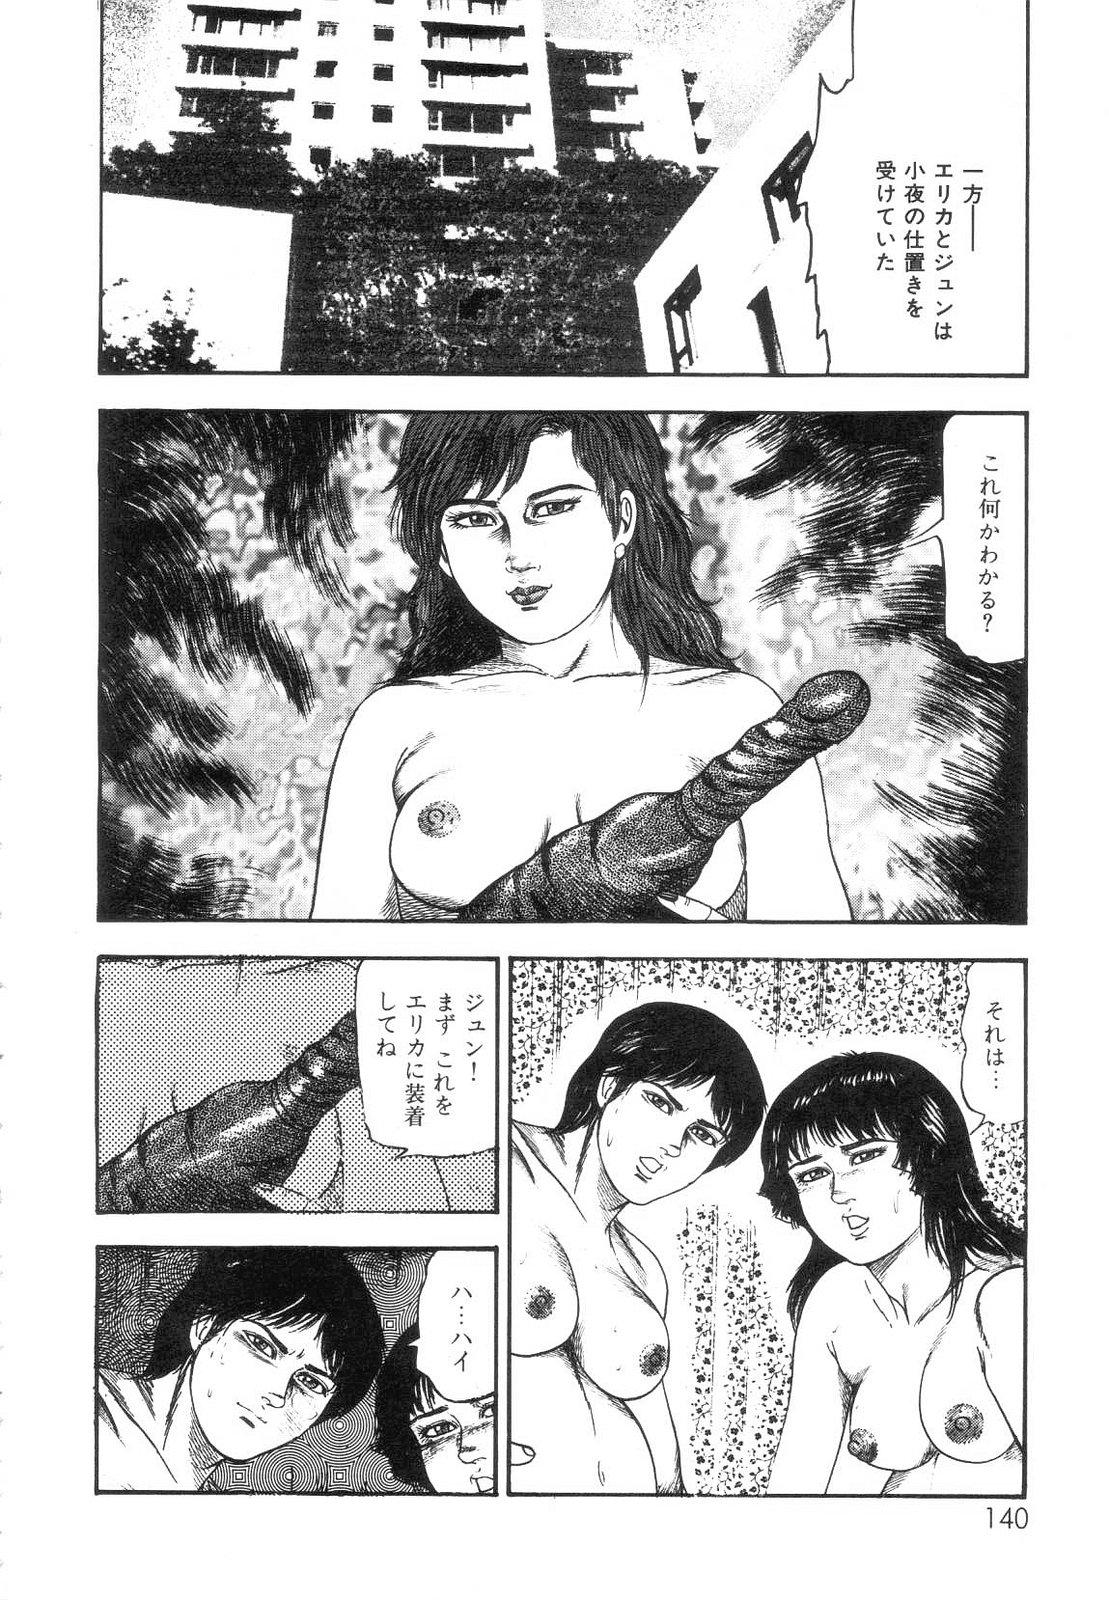 Shiro no Mokushiroku Vol. 7 - Shiiku Ningyou Erika no Shou 141